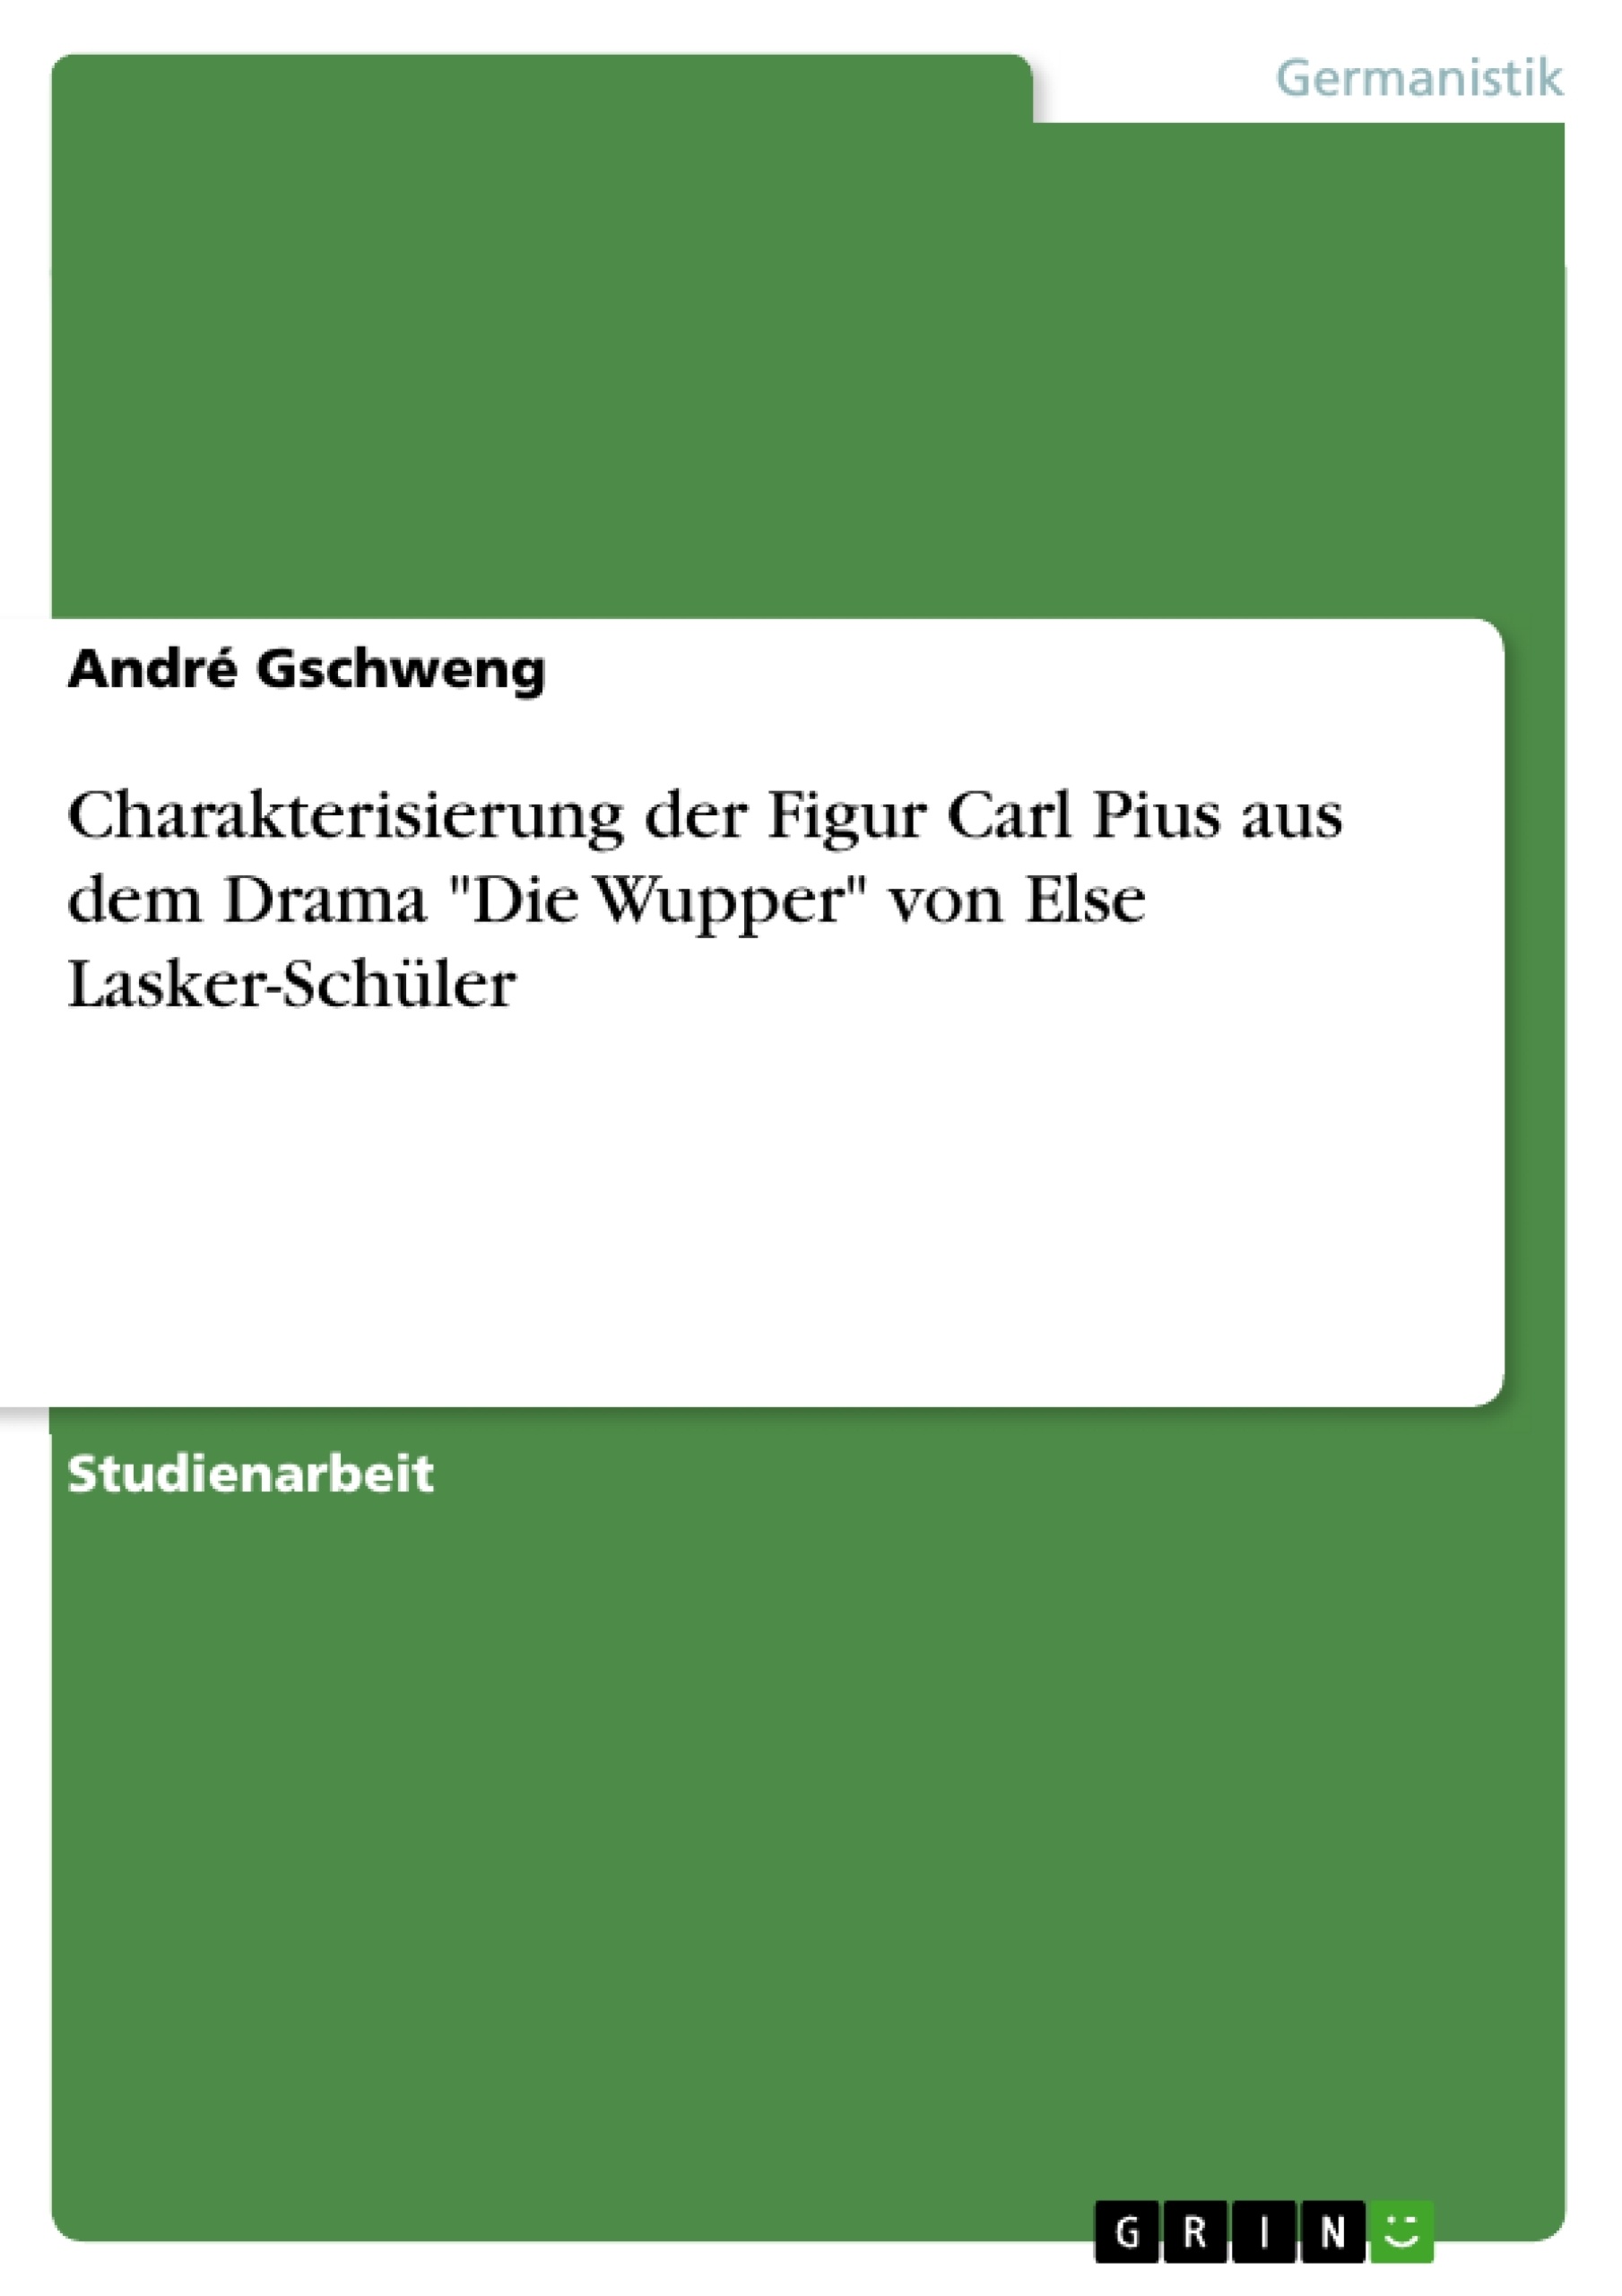 Title: Charakterisierung der Figur Carl Pius aus dem Drama "Die Wupper" von Else Lasker-Schüler